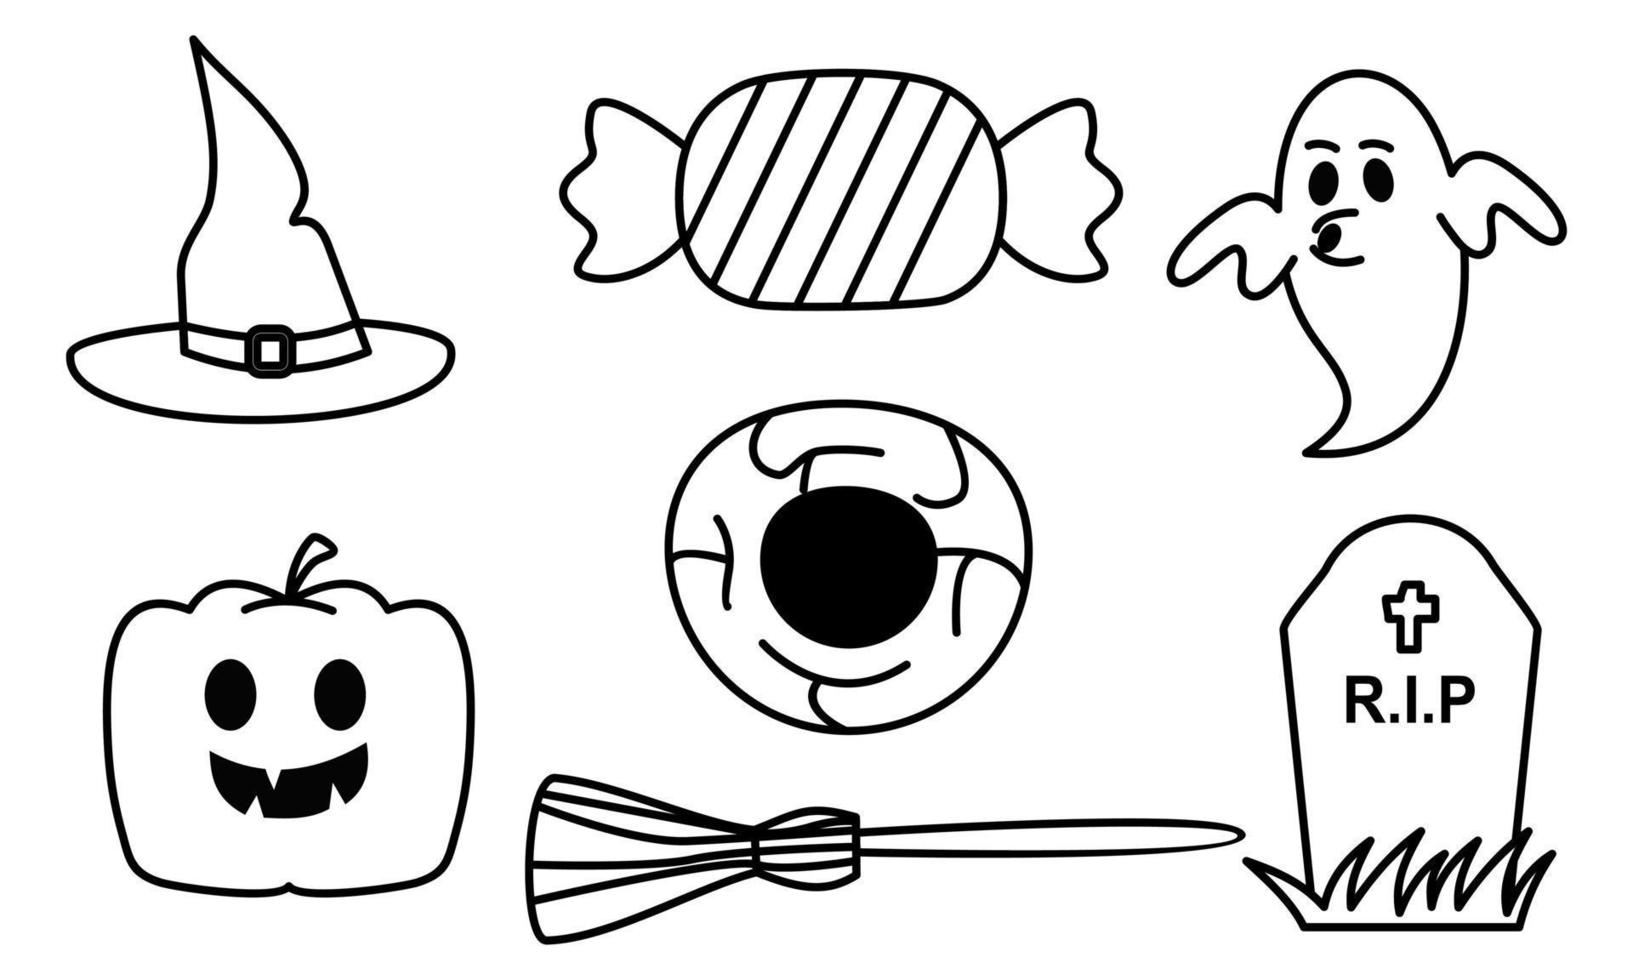 Graphic elements for halloween doodle vector. Happy Halloween card background vector